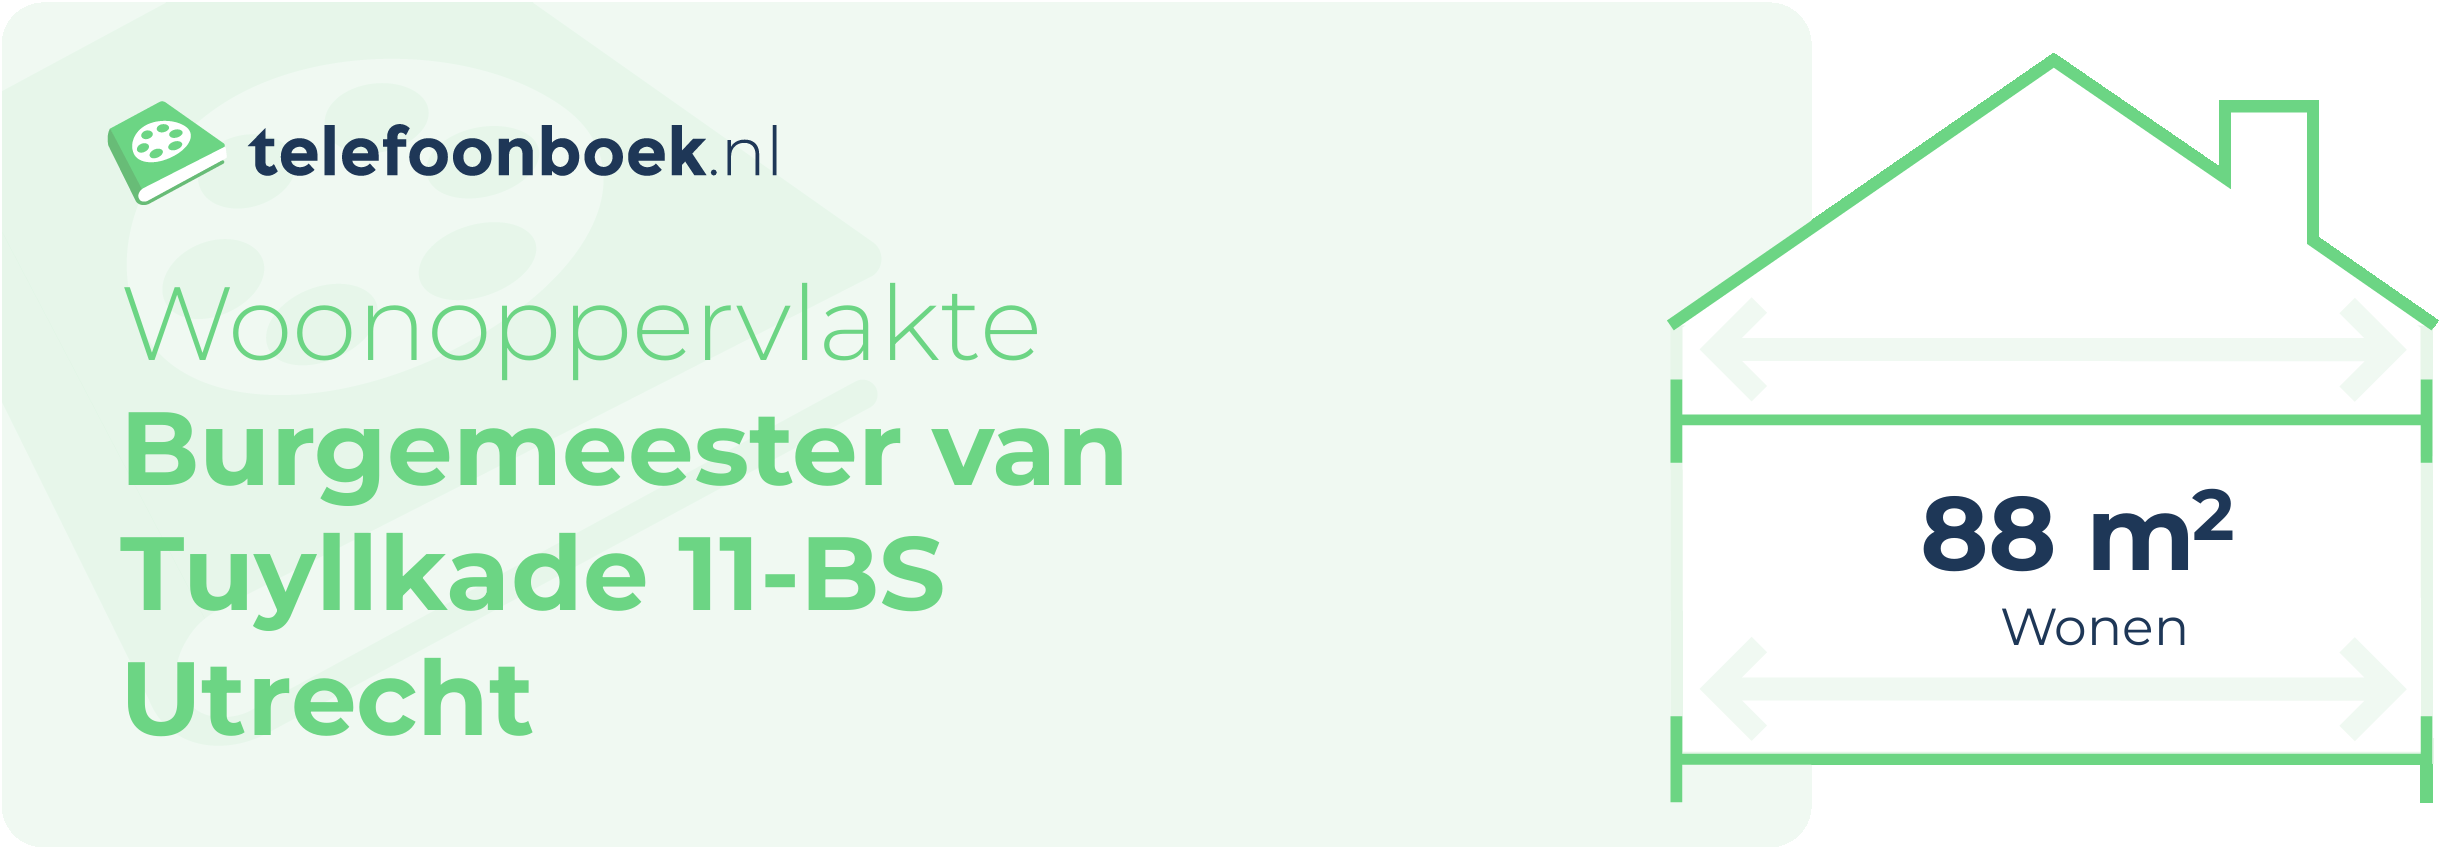 Woonoppervlakte Burgemeester Van Tuyllkade 11-BS Utrecht